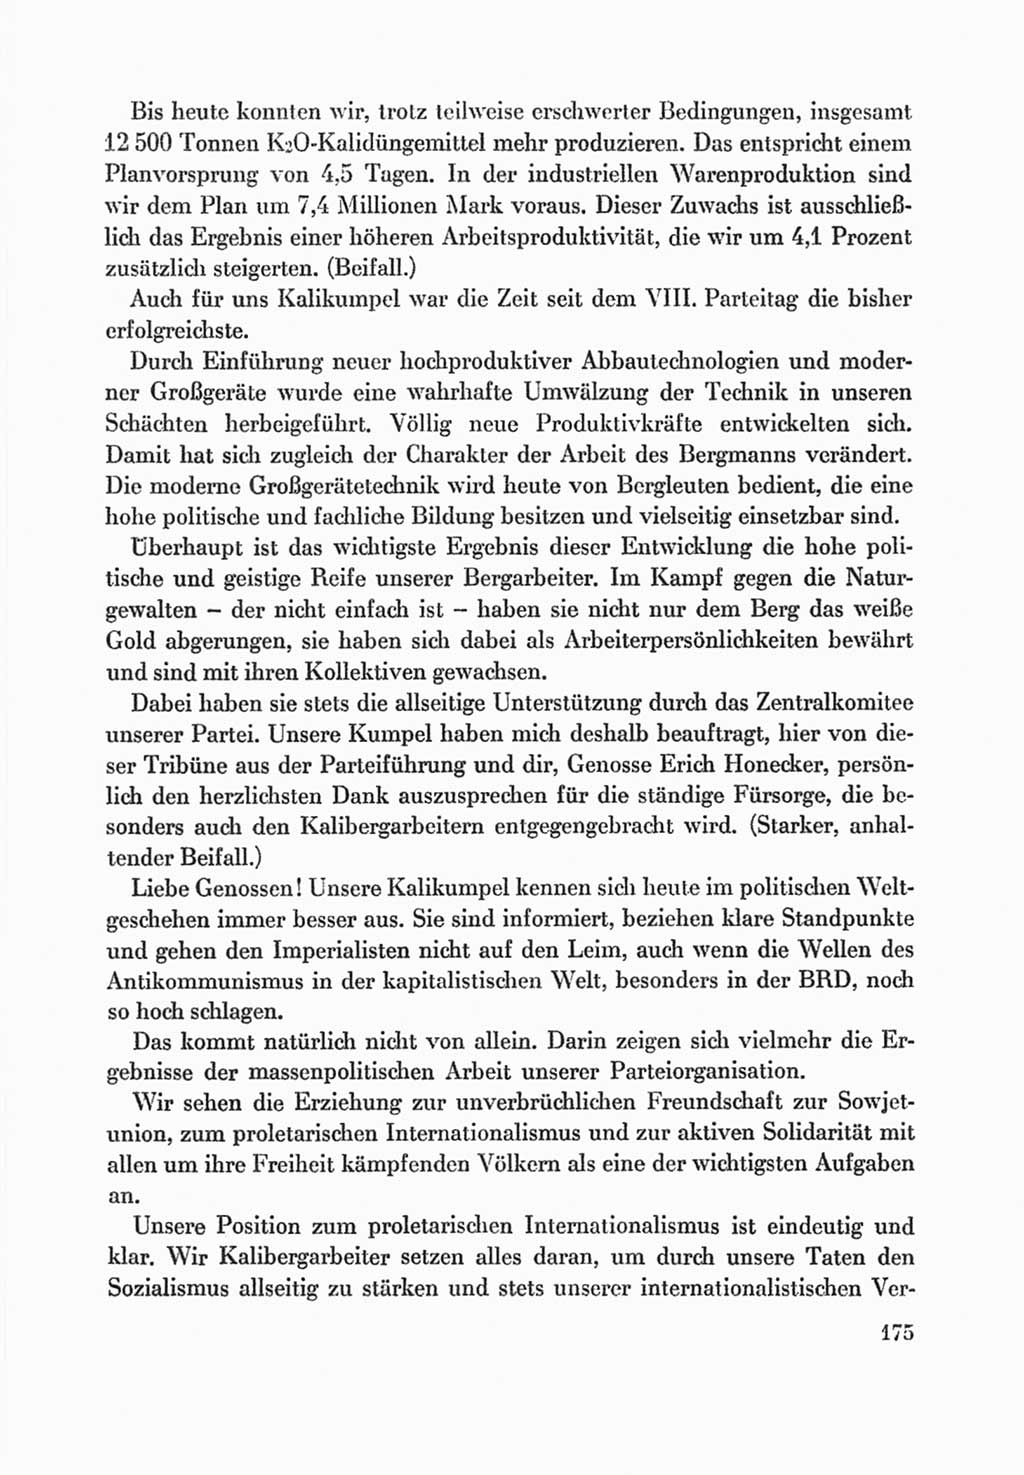 Protokoll der Verhandlungen des Ⅸ. Parteitages der Sozialistischen Einheitspartei Deutschlands (SED) [Deutsche Demokratische Republik (DDR)] 1976, Band 1, Seite 175 (Prot. Verh. Ⅸ. PT SED DDR 1976, Bd. 1, S. 175)